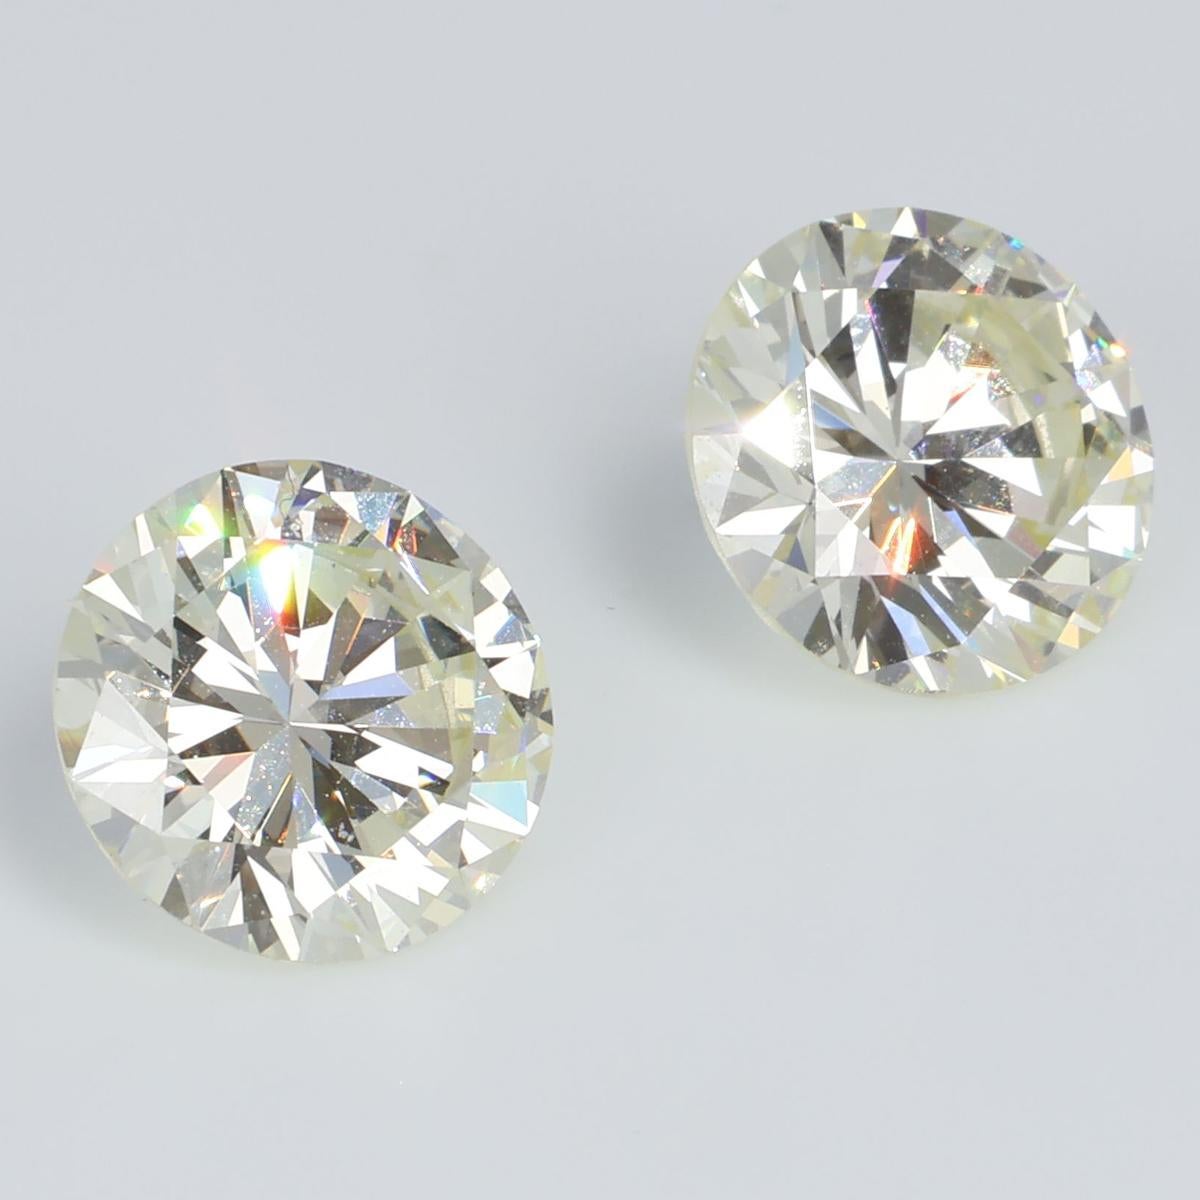 Taille brillant Paire de diamants IGI 2,12 ct + 2,12 ct Duet VS1 - Très clair jaune 4,24 ct en vente